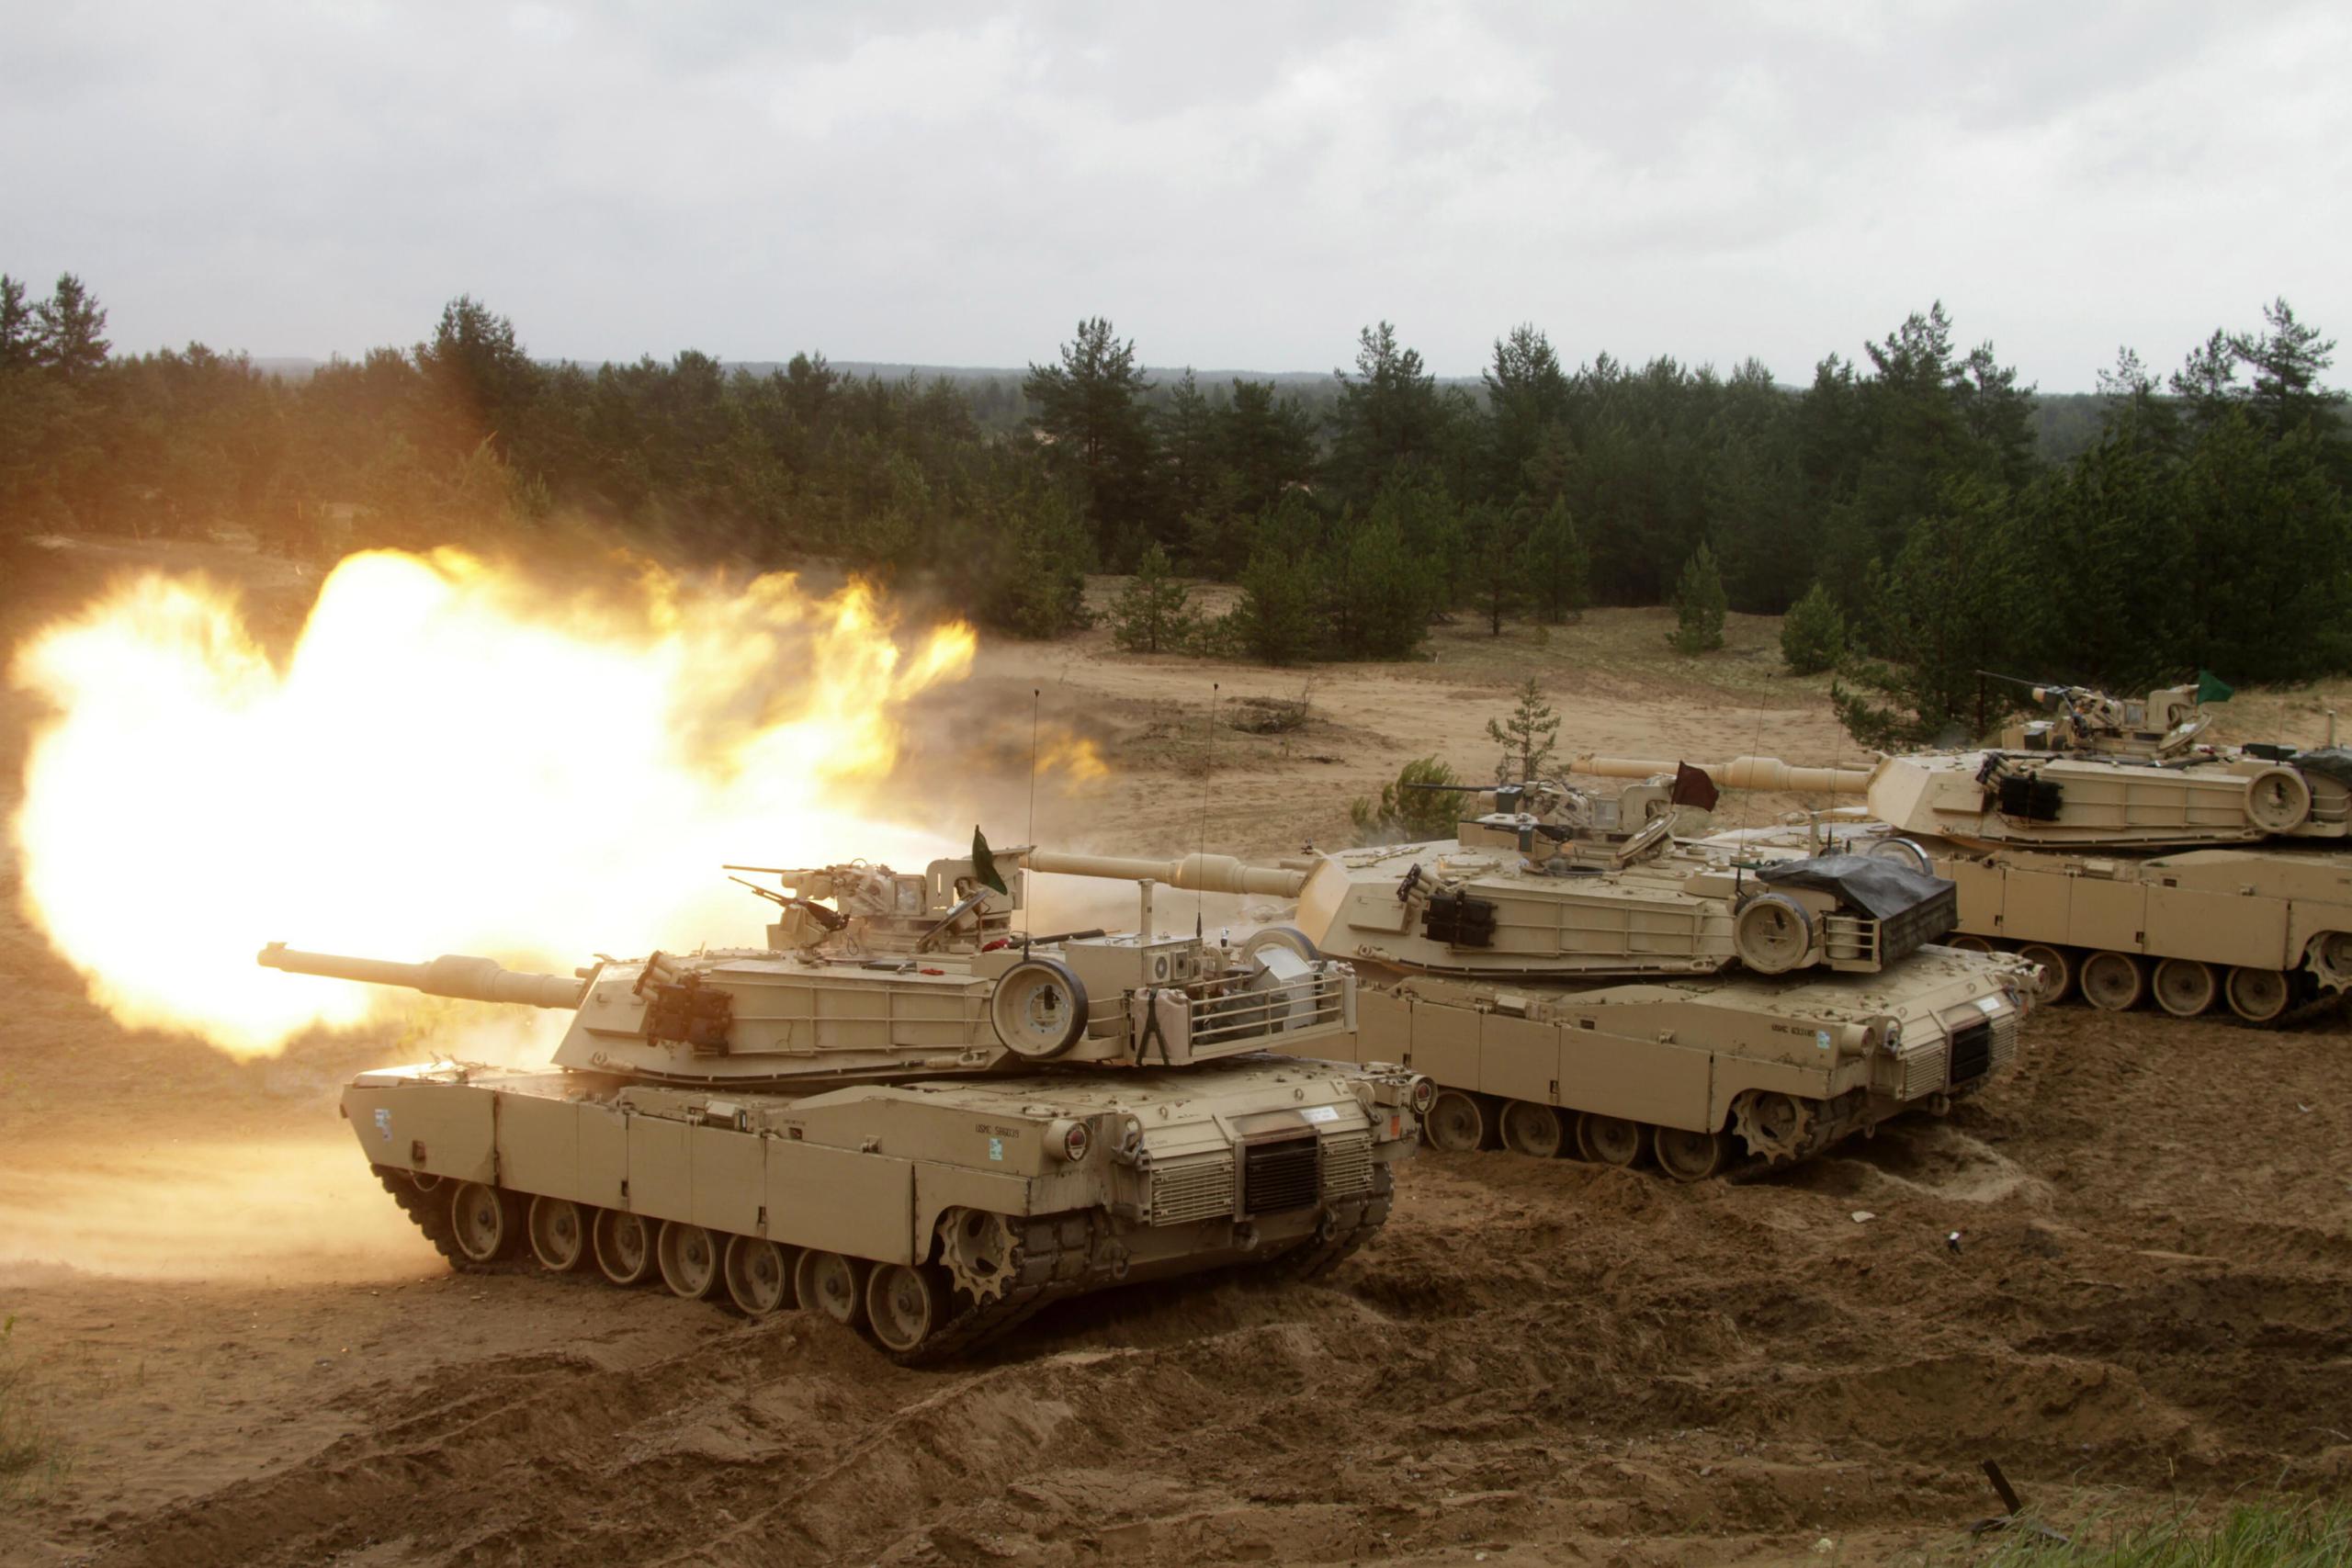 Vista de tanques Abrams de EE.UU., en una fotografía de archivo. EFE/Valda Kalnina
